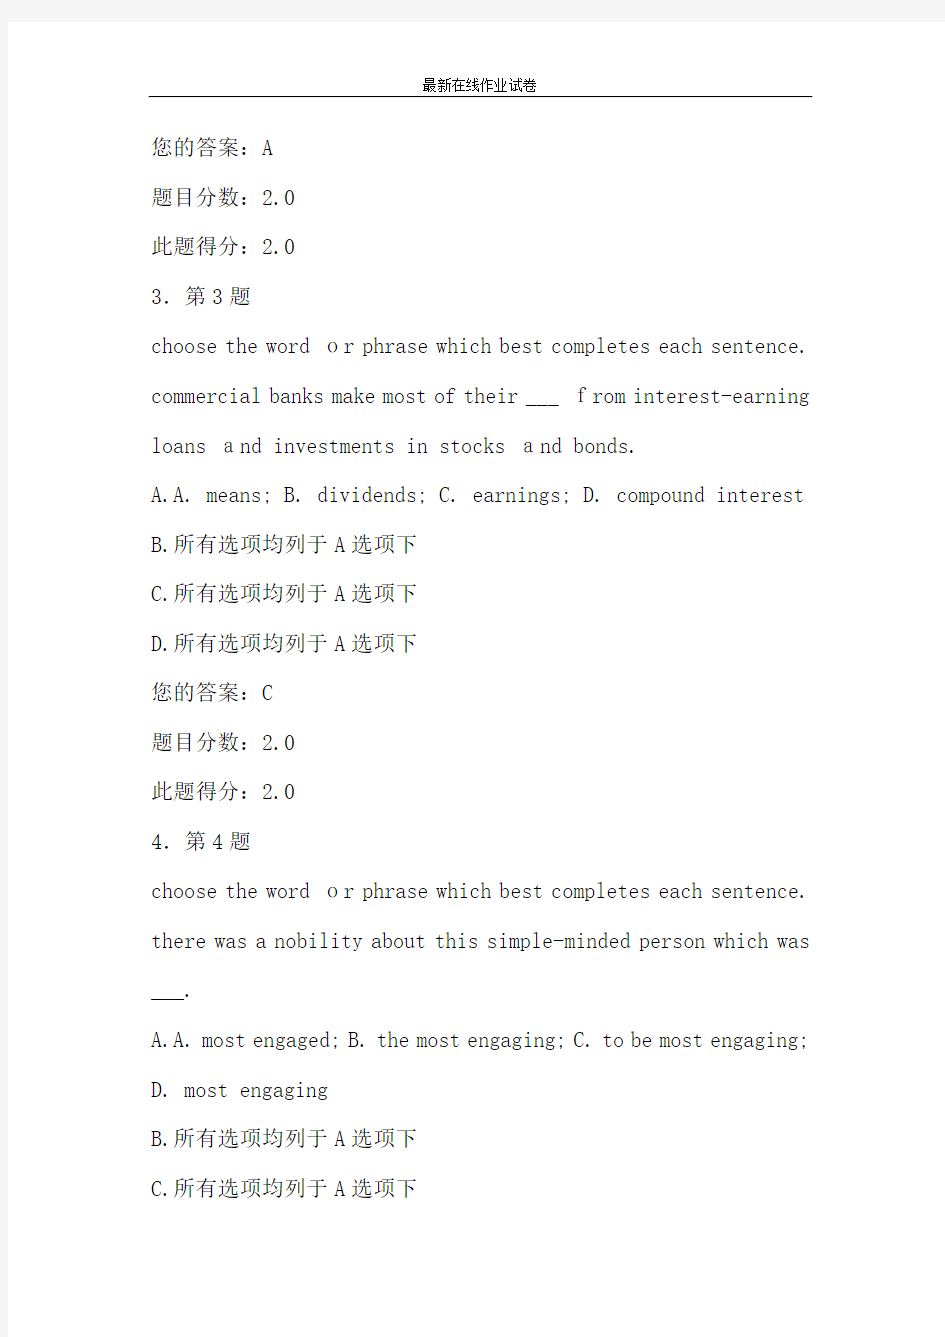 华南师范大学2015《高级英语》在线作业题库及满分答案-更新